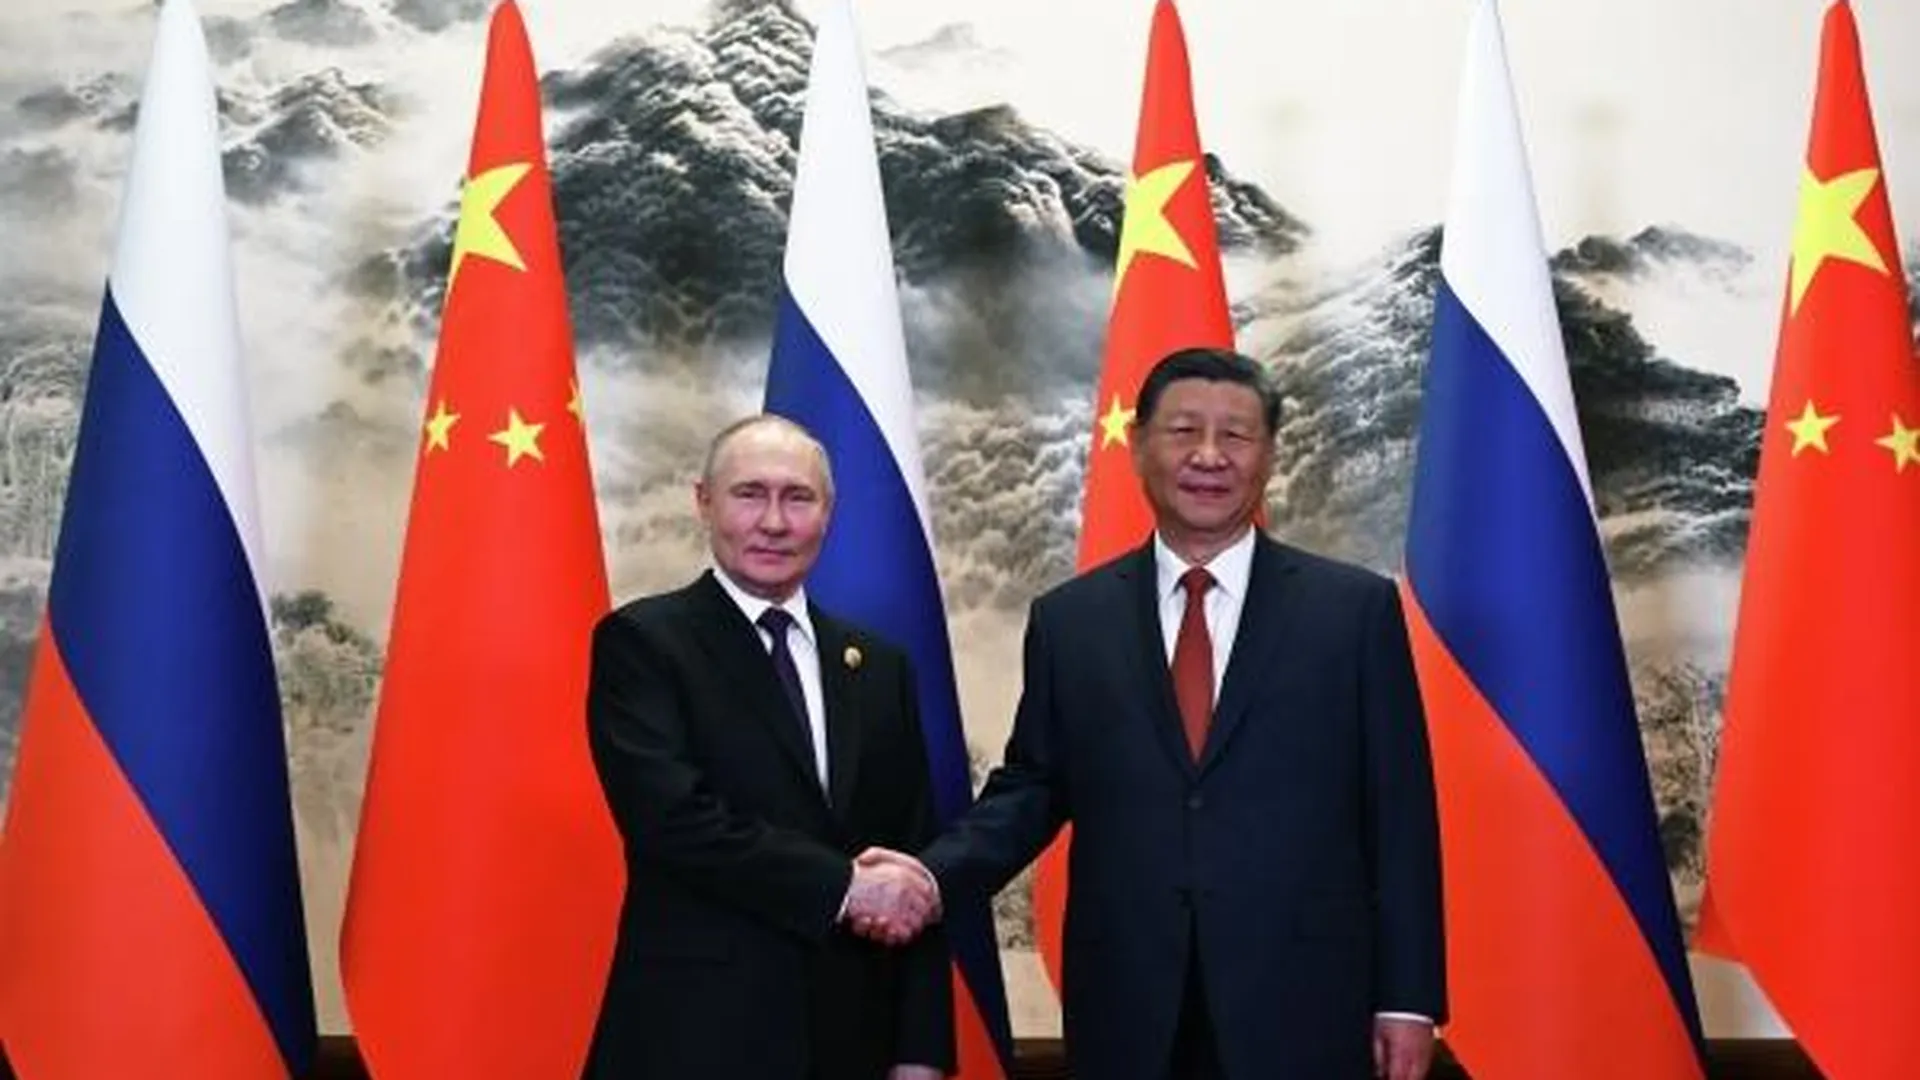 Не конфронтация, а торговля. Песков опроверг дружбу России и Китая против третьих стран